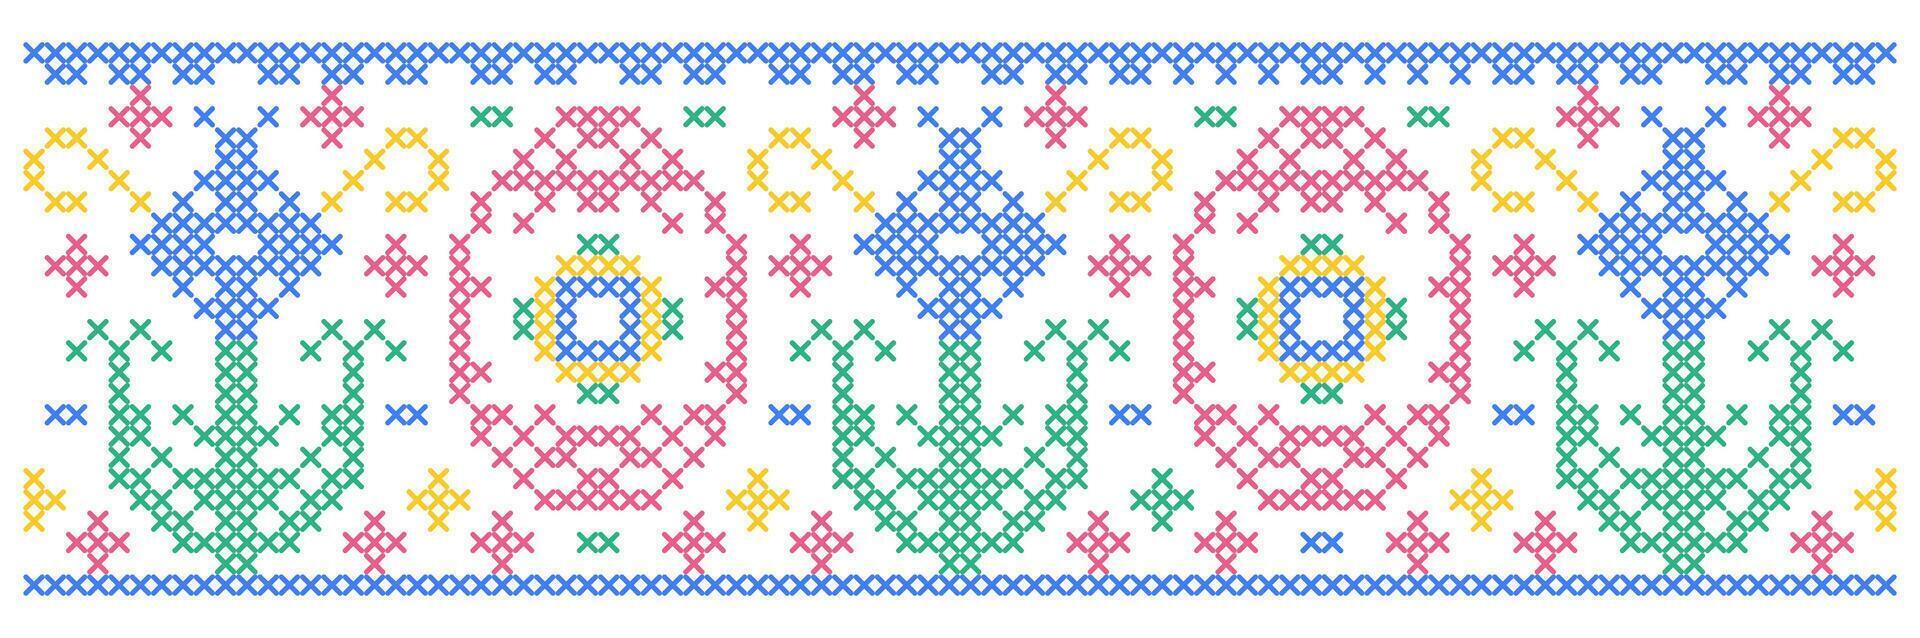 Ostern Muster mit Blumen und Ostern Eier im Kreuz Stich Stil auf Weiß Hintergrund. vektor